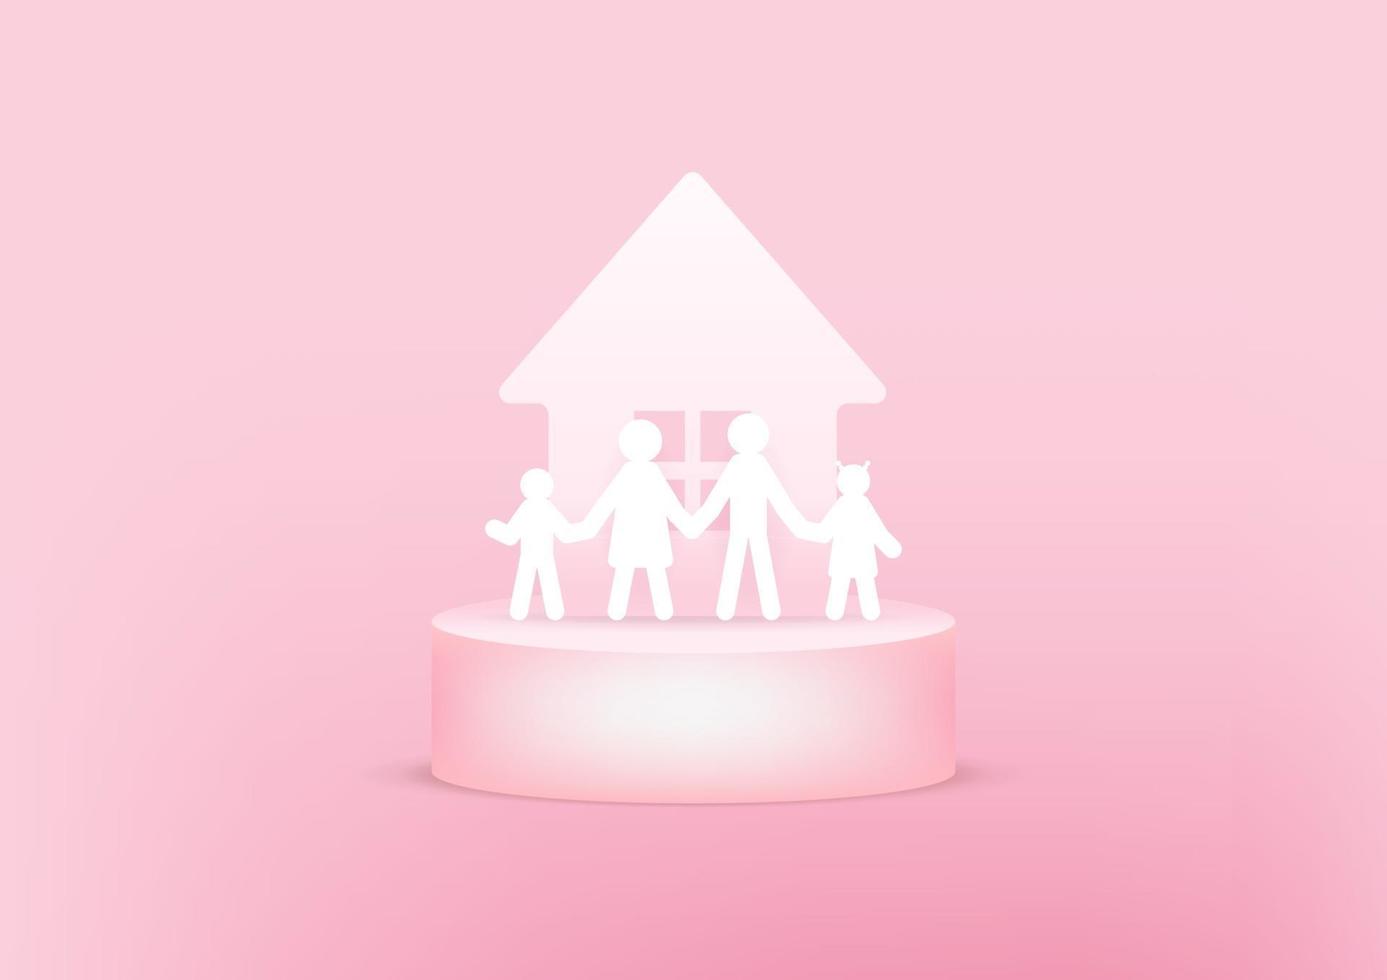 casa e família papel 3d no fundo rosa. conceito de família feliz. vetor